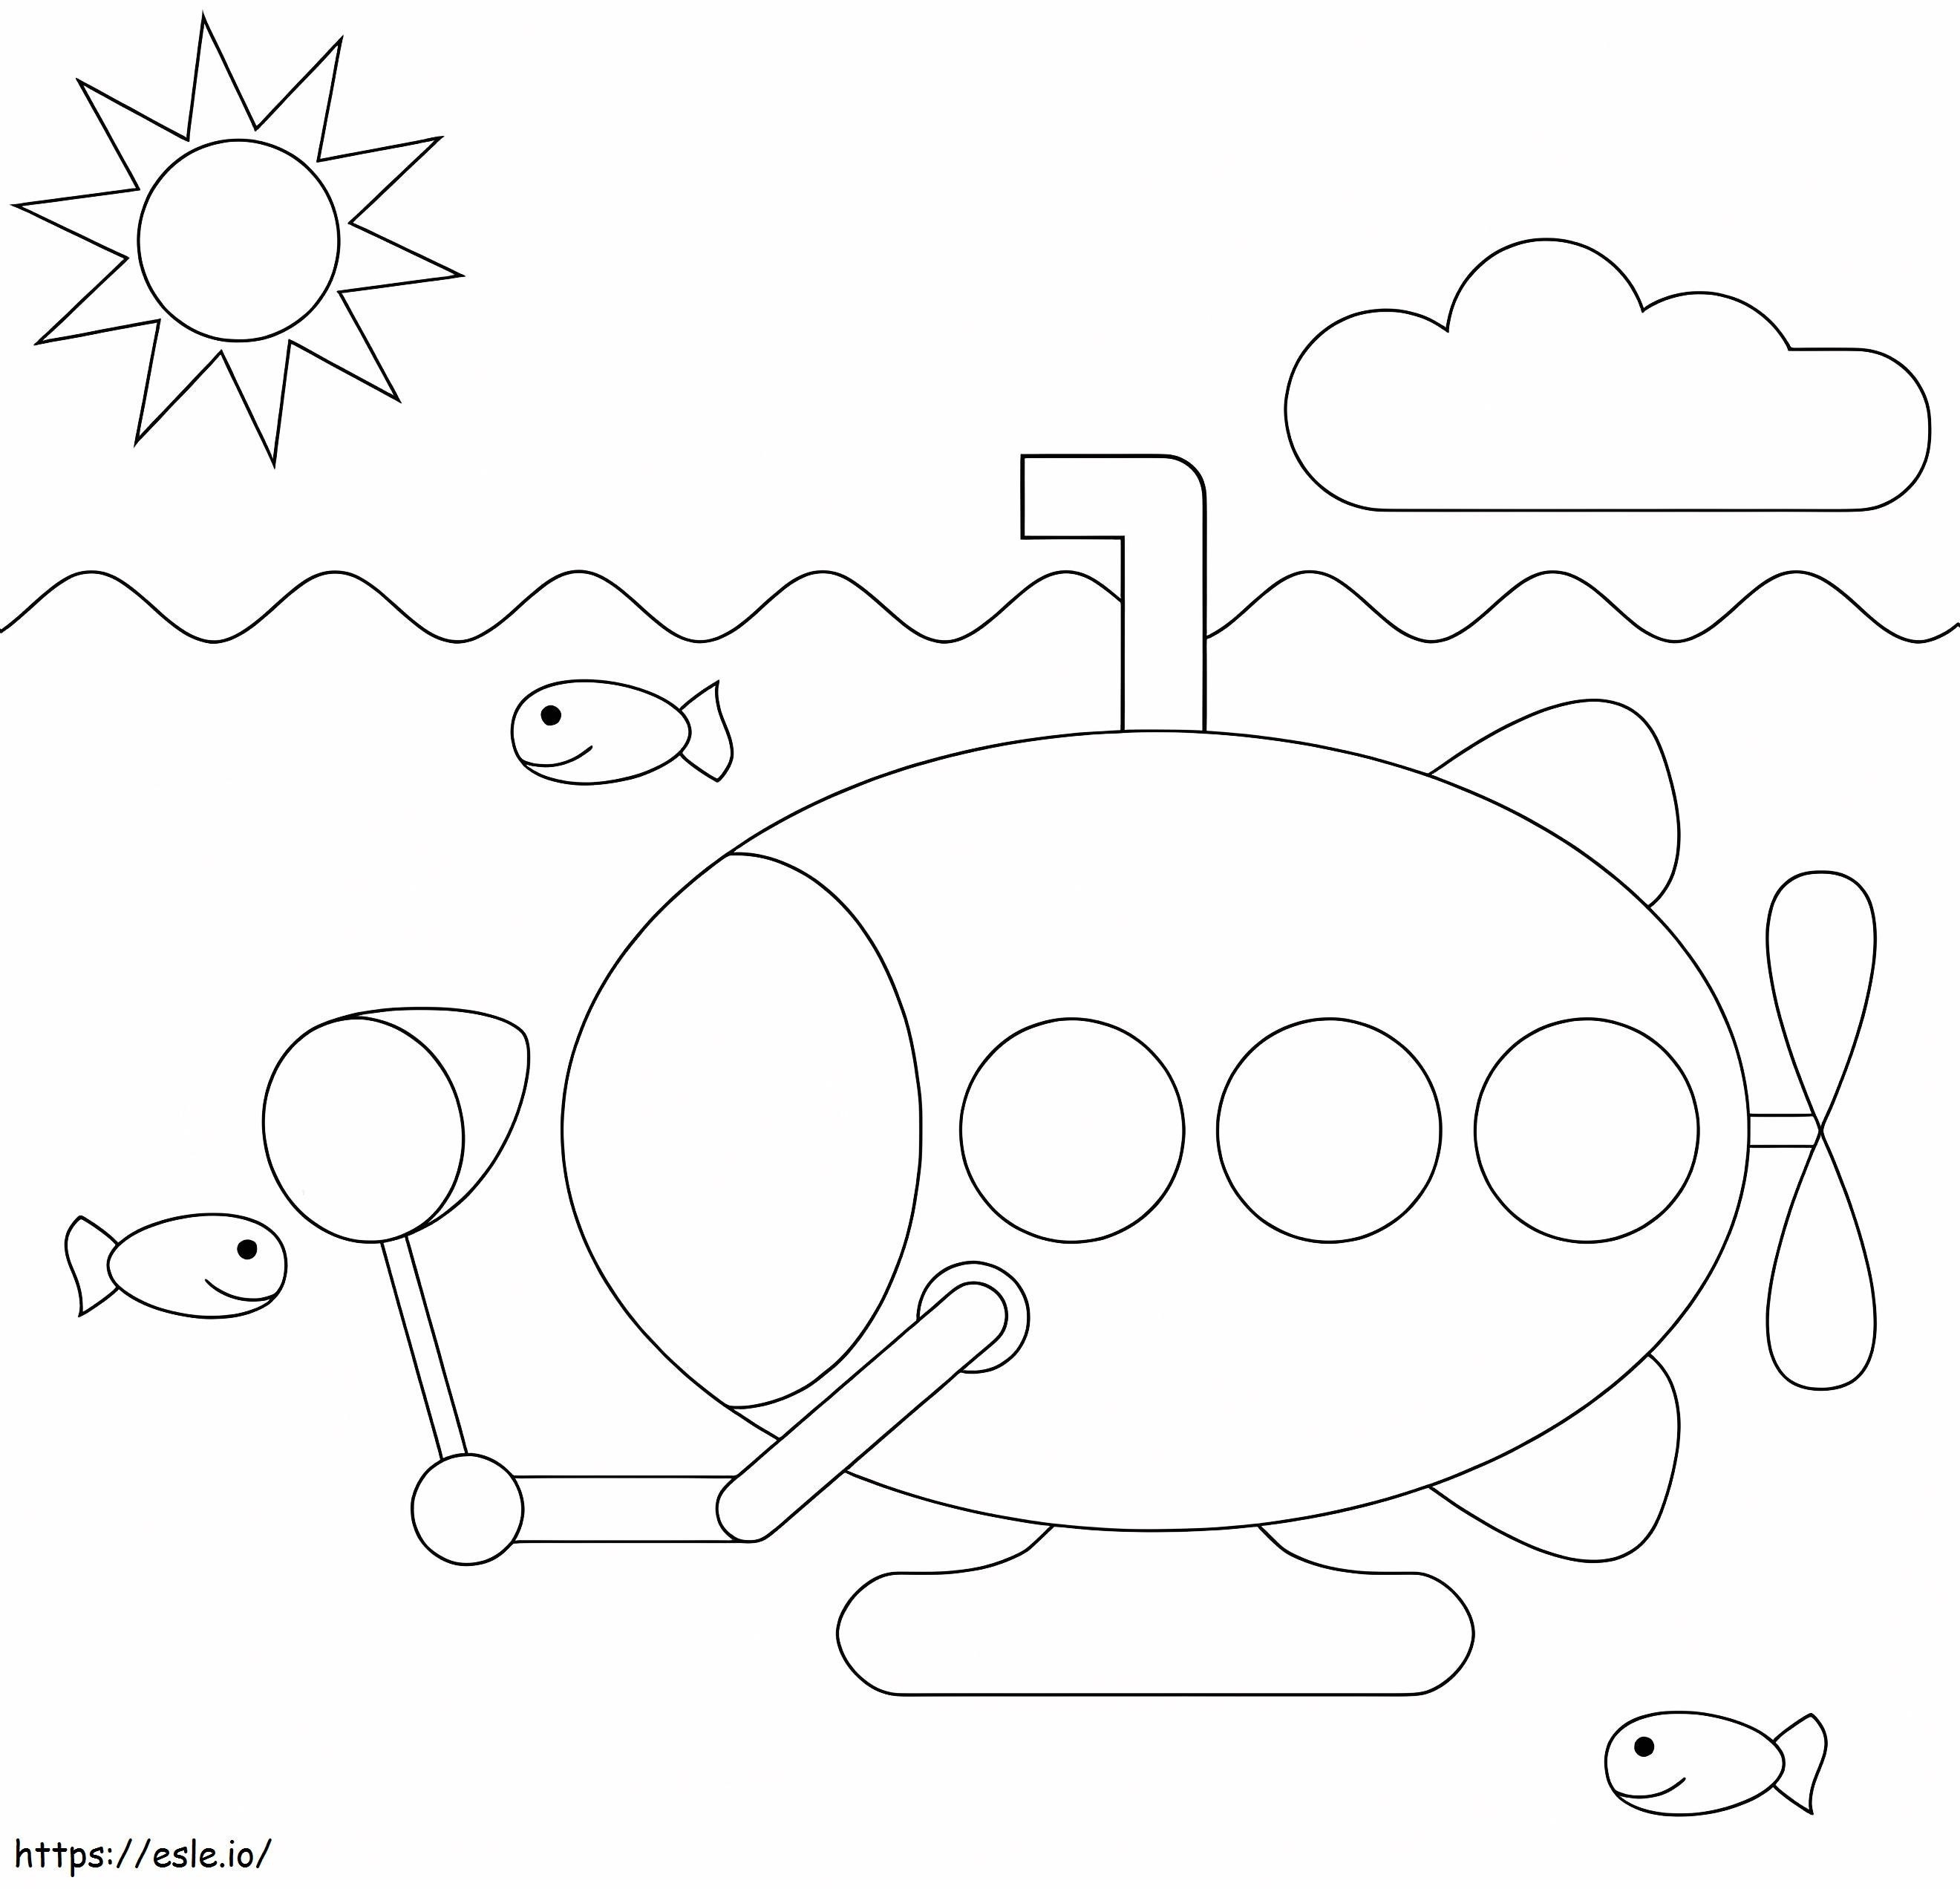 Submarino fácil para crianças para colorir